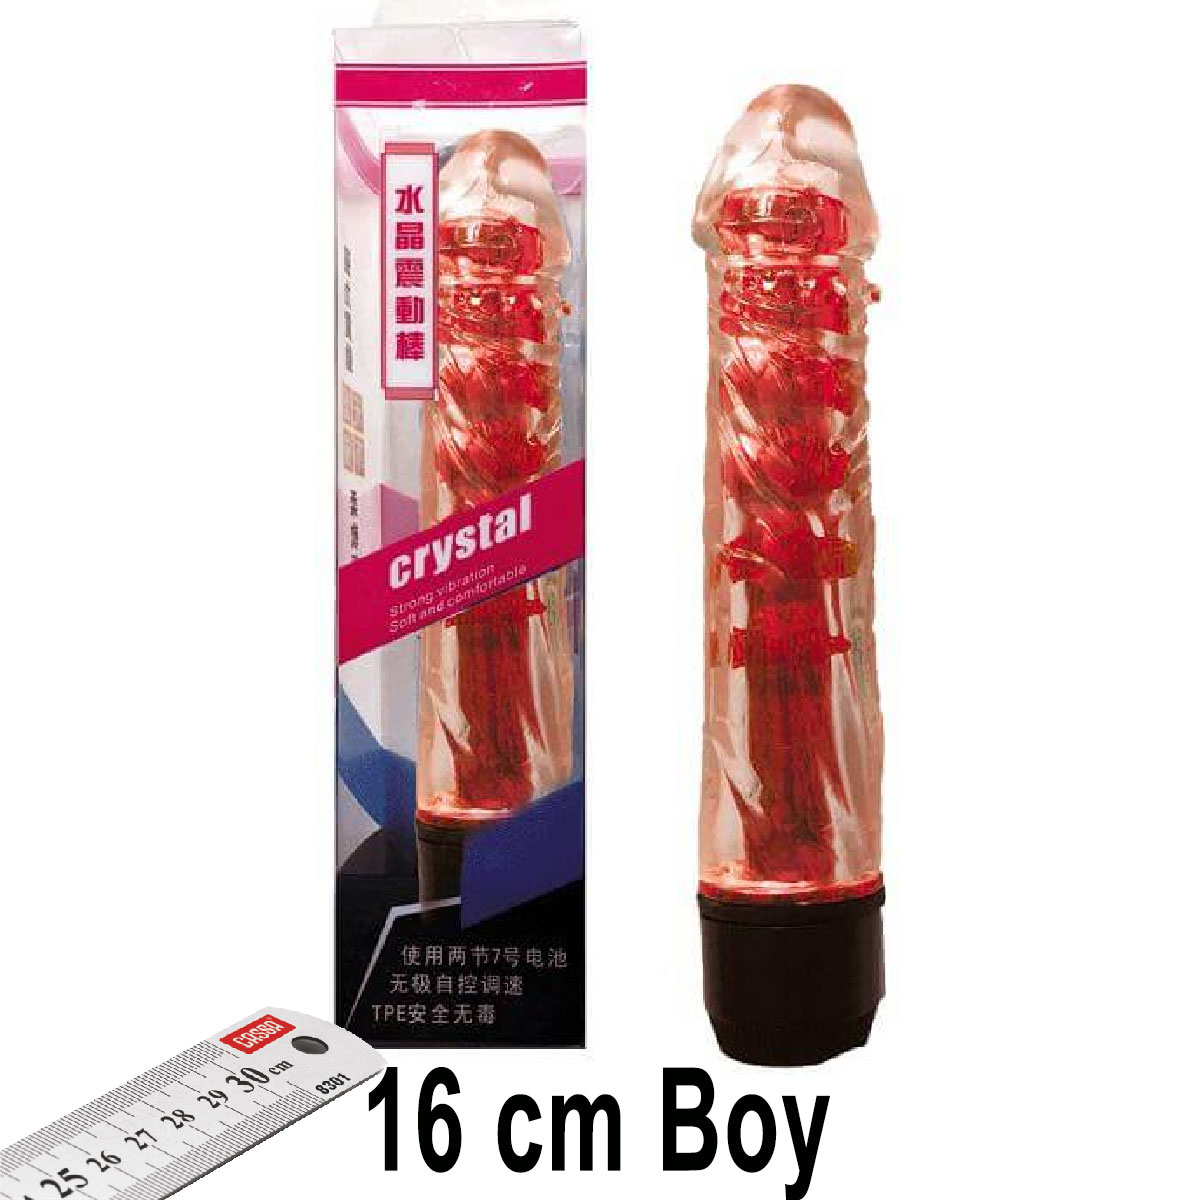 Crystal 16 cm Boy Kırmızı Renk Vibratör ve Zevk Kılıfı Seti AL-Q028-1